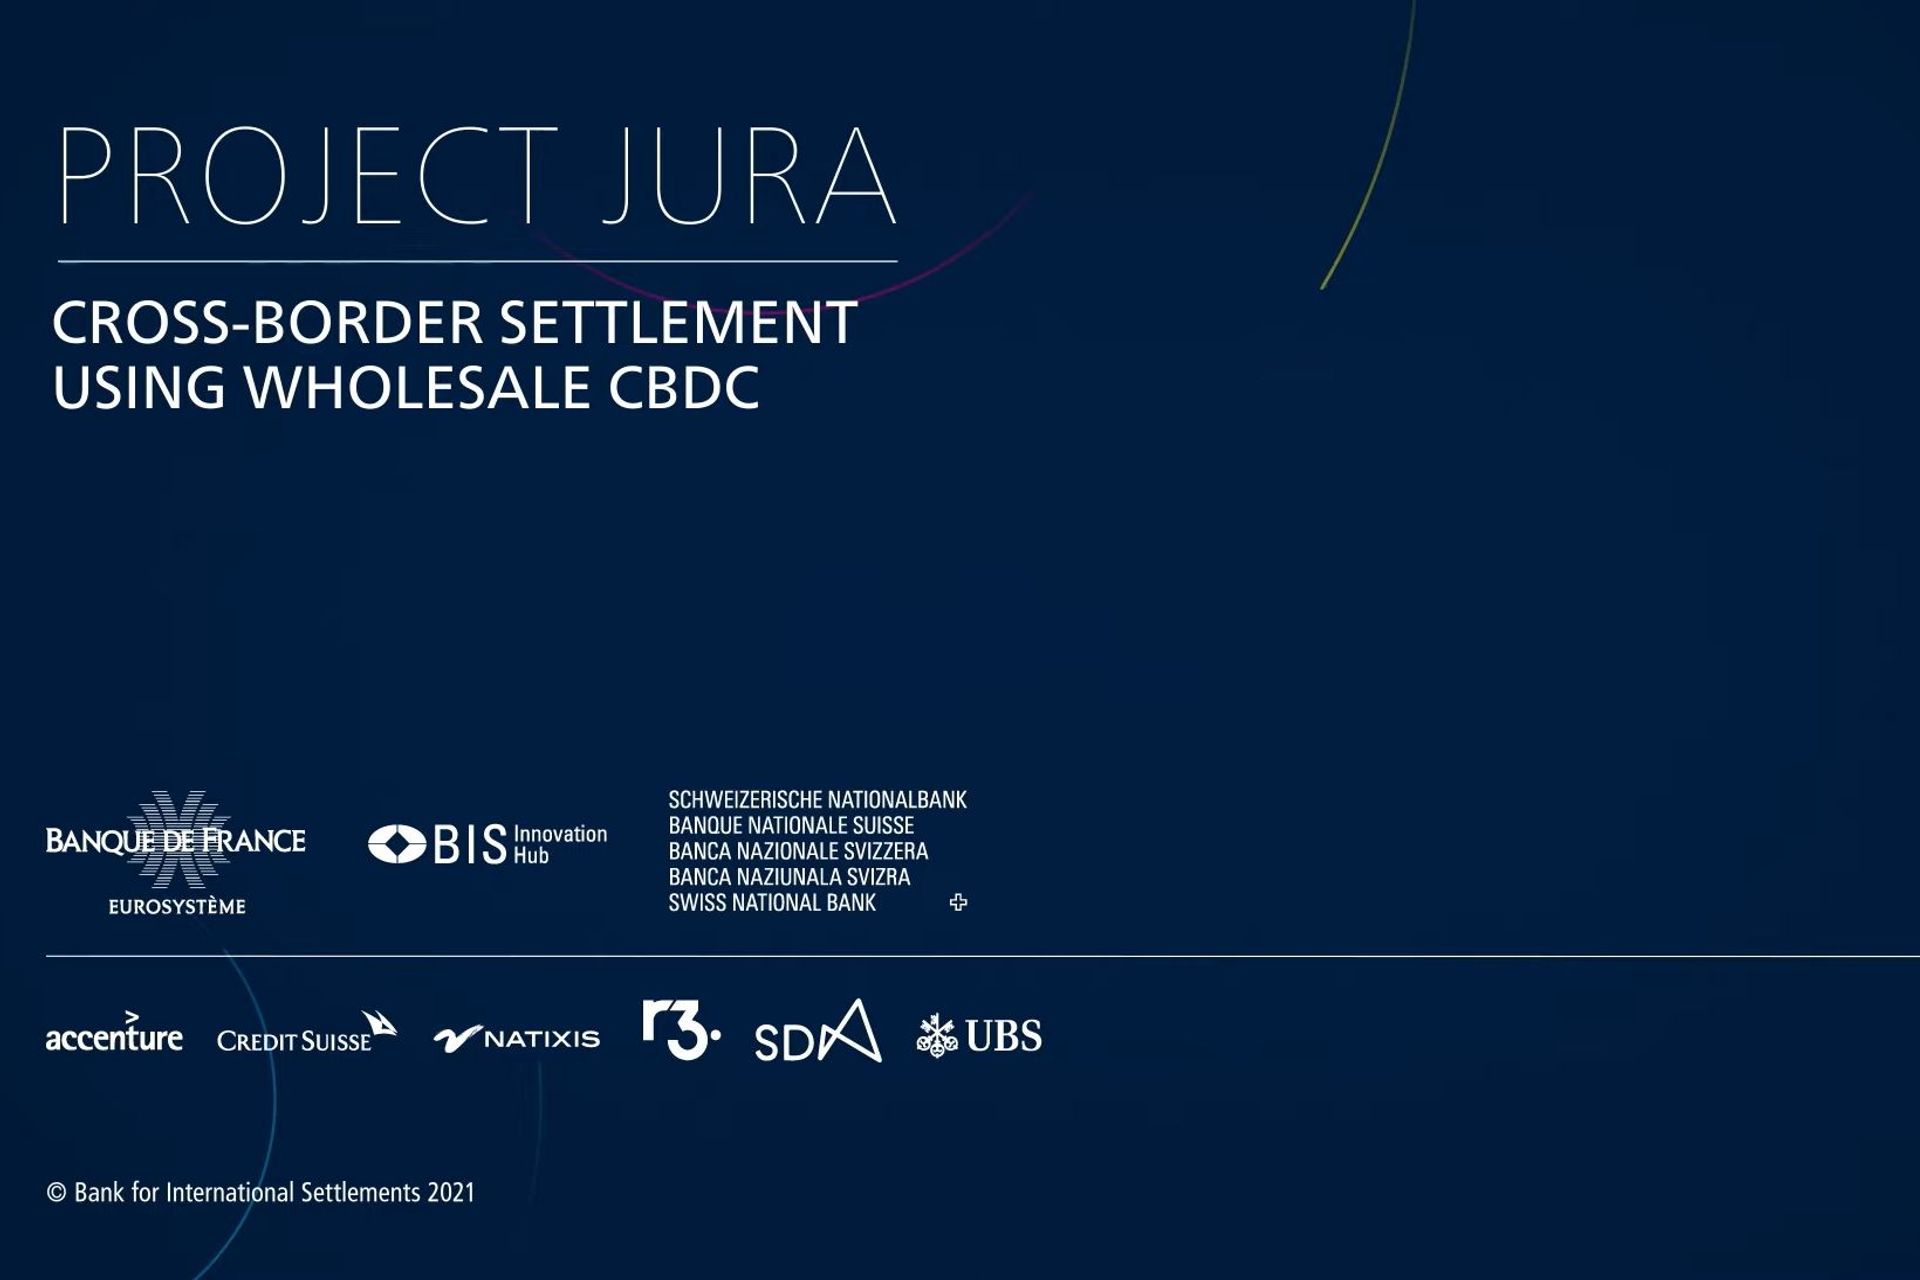 Partnerunternehmen, Beschreibung und Logo des „Jura-Projekts“